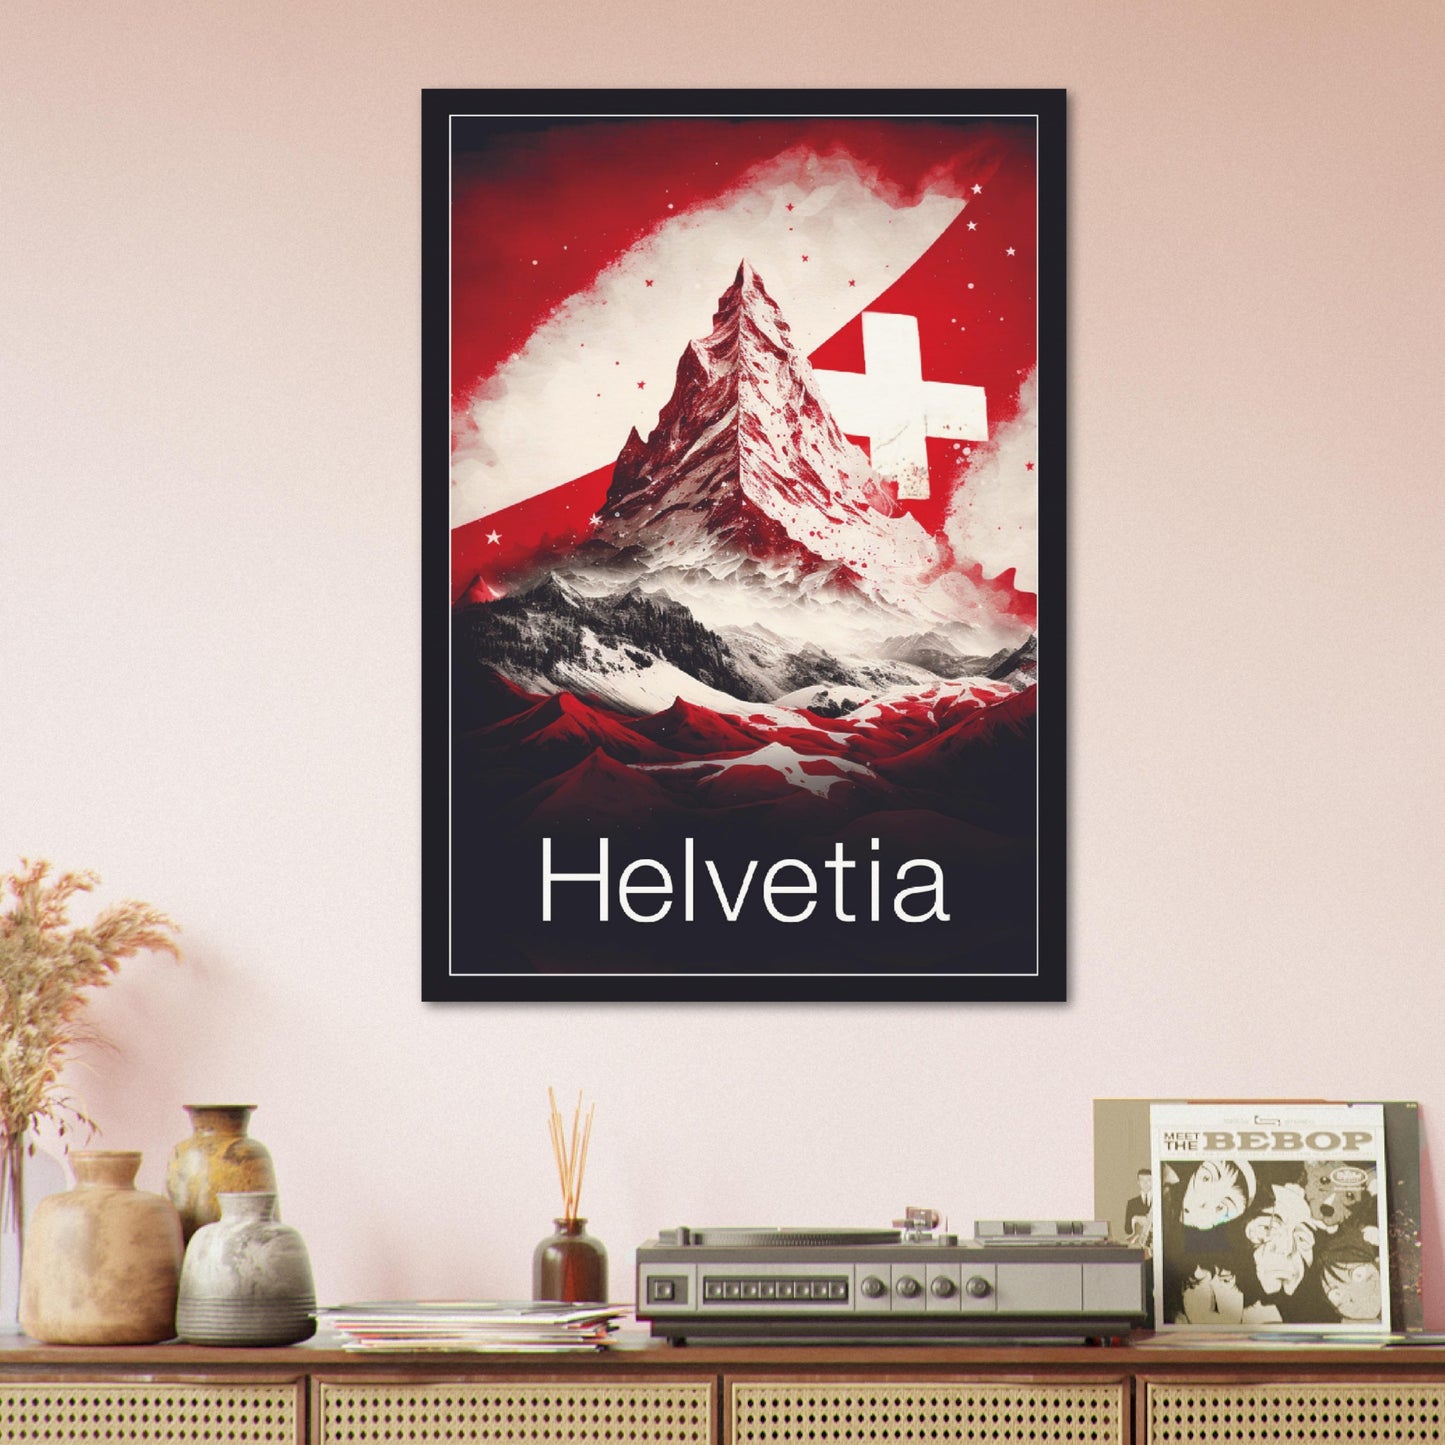 Helvetia Matterhorn - Poster